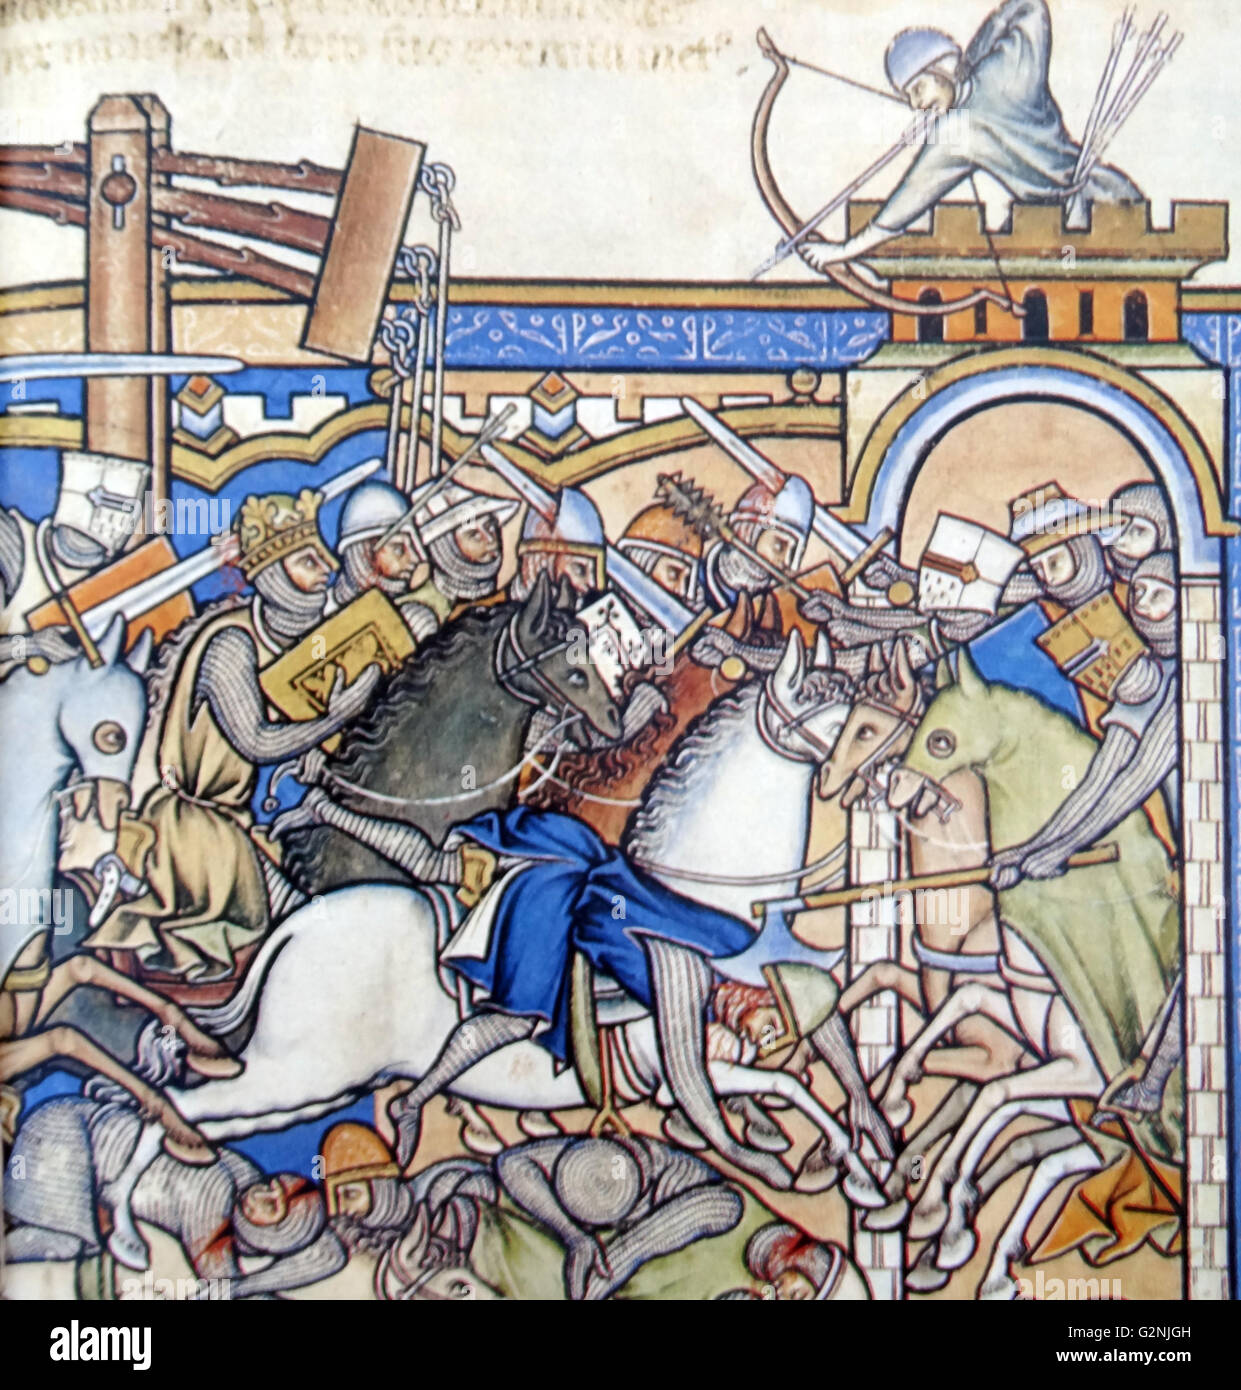 Scène de bataille médiéval dépeint des chevaliers en électronique de la chaîne et des casques. Leurs armes : sabre lourd pour le piratage, mace, Bataille-ax, des flèches et d'une catapulte pour lancer des pierres. En date du 13e siècle Banque D'Images